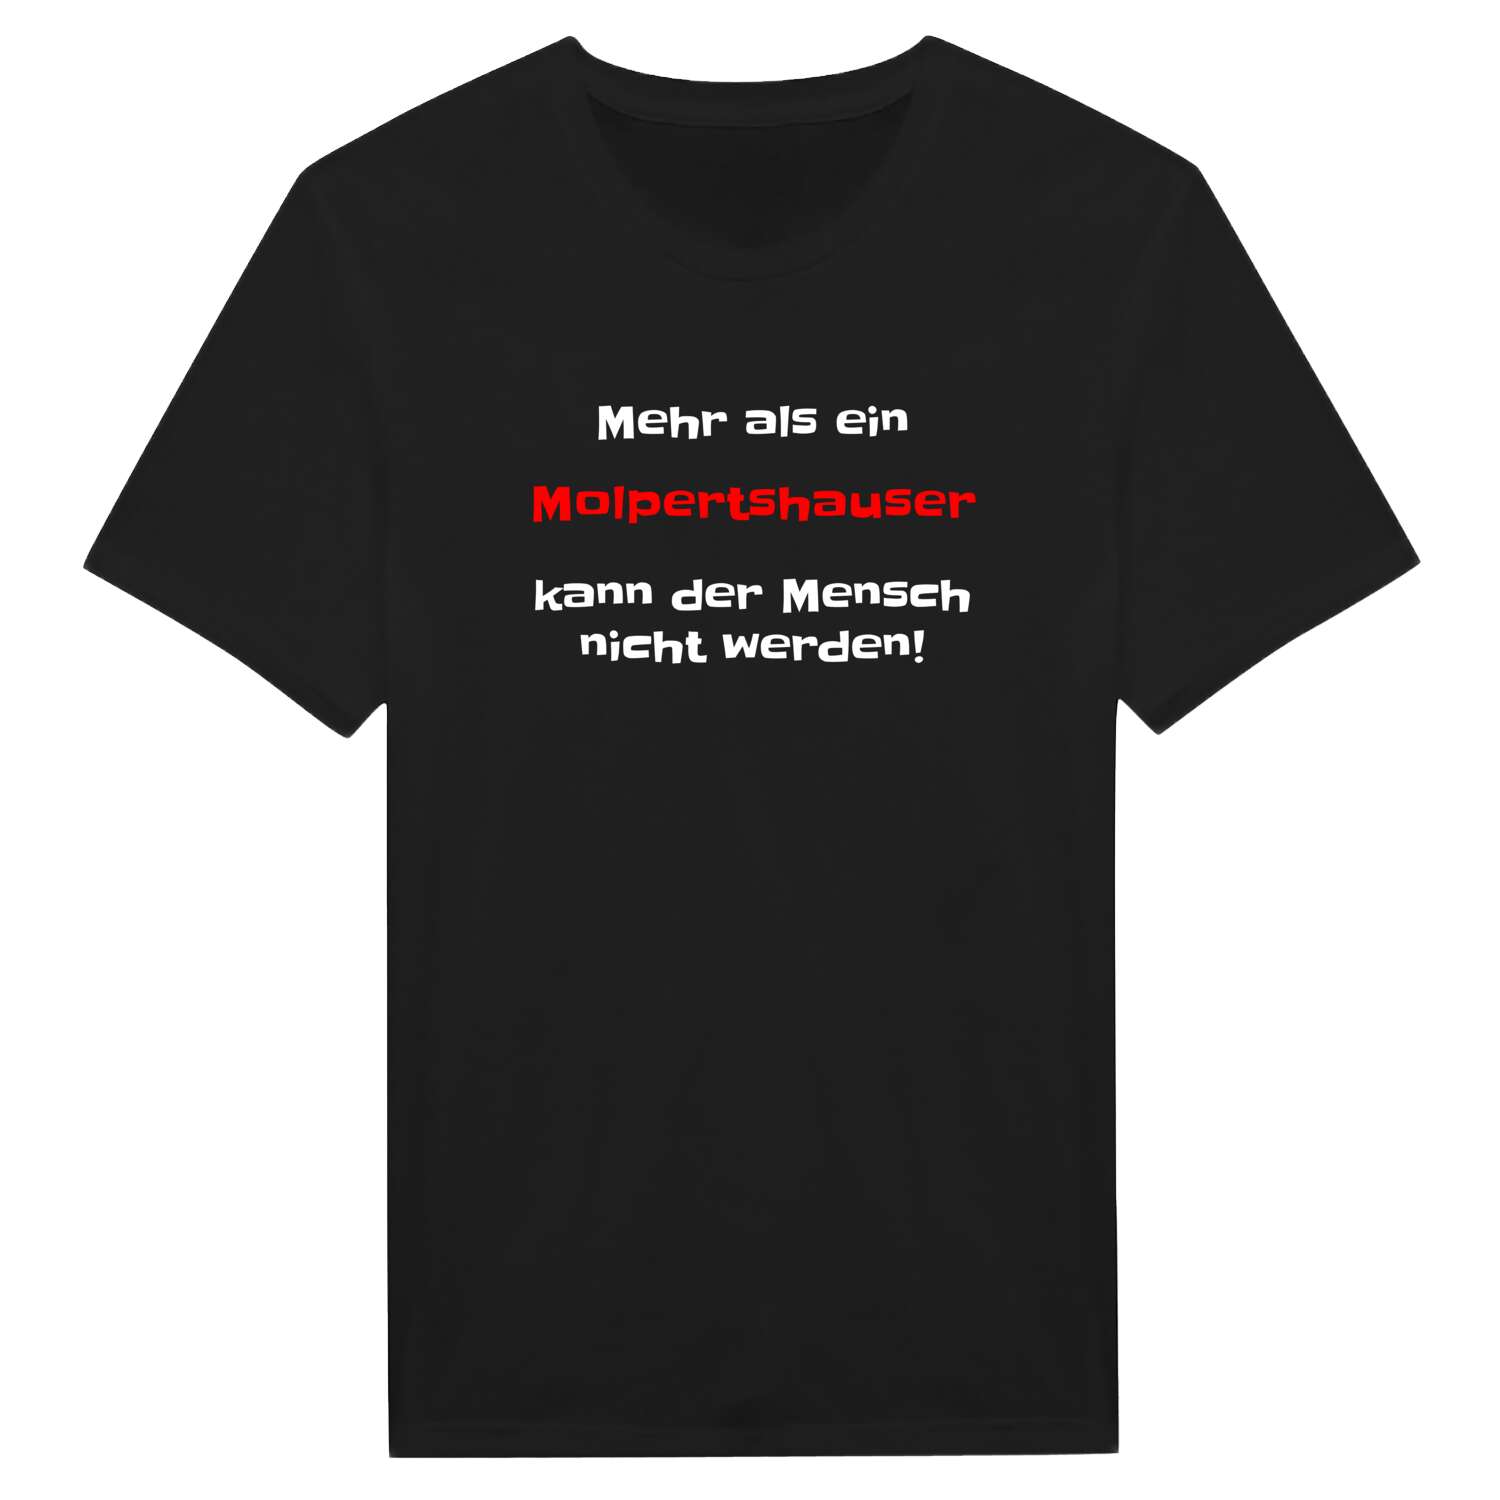 Molpertshaus T-Shirt »Mehr als ein«